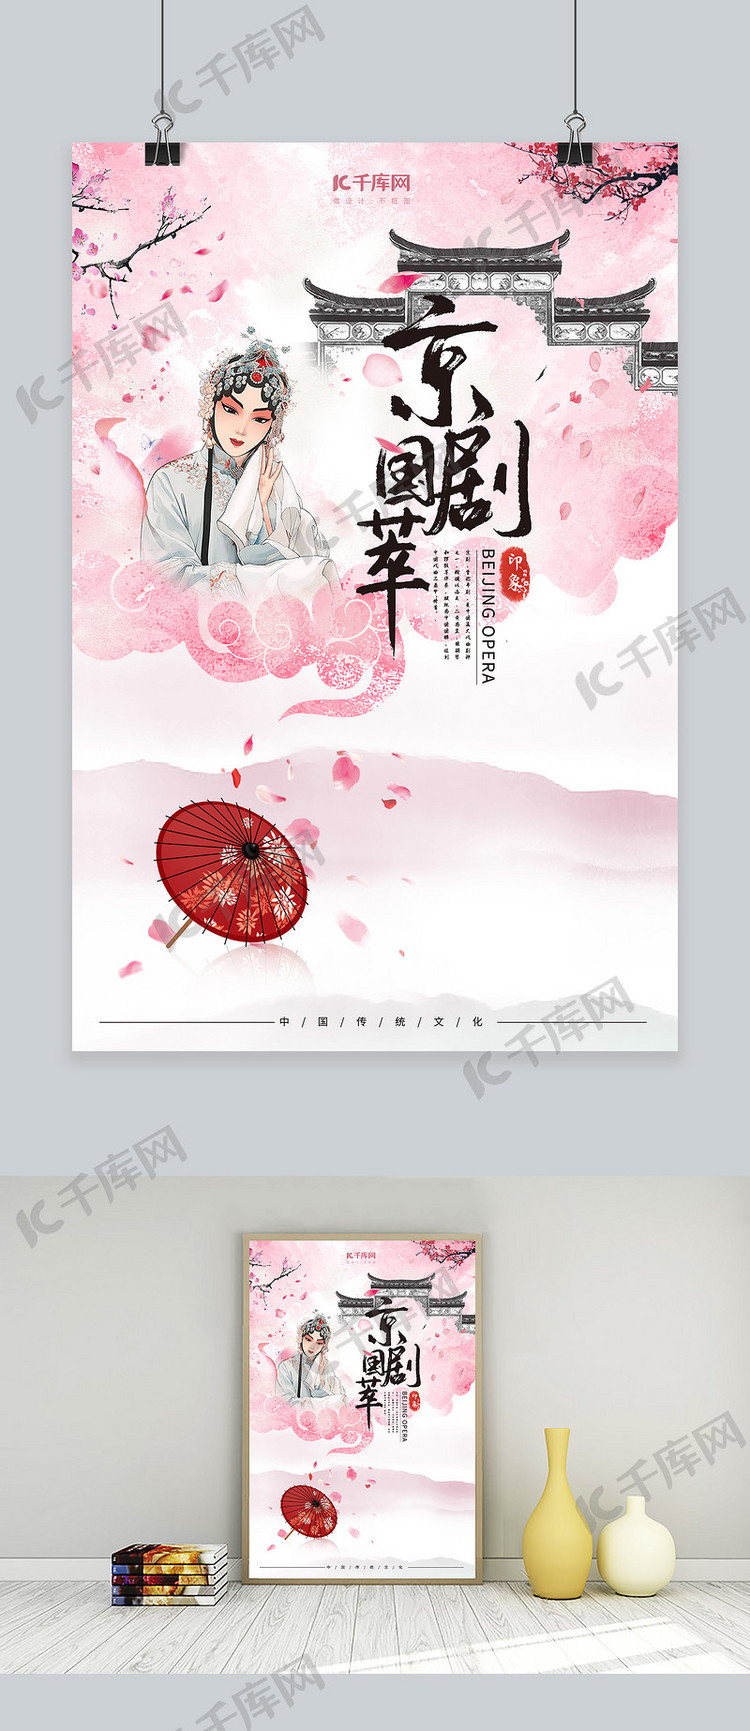 中国风戏曲文化宣传海报